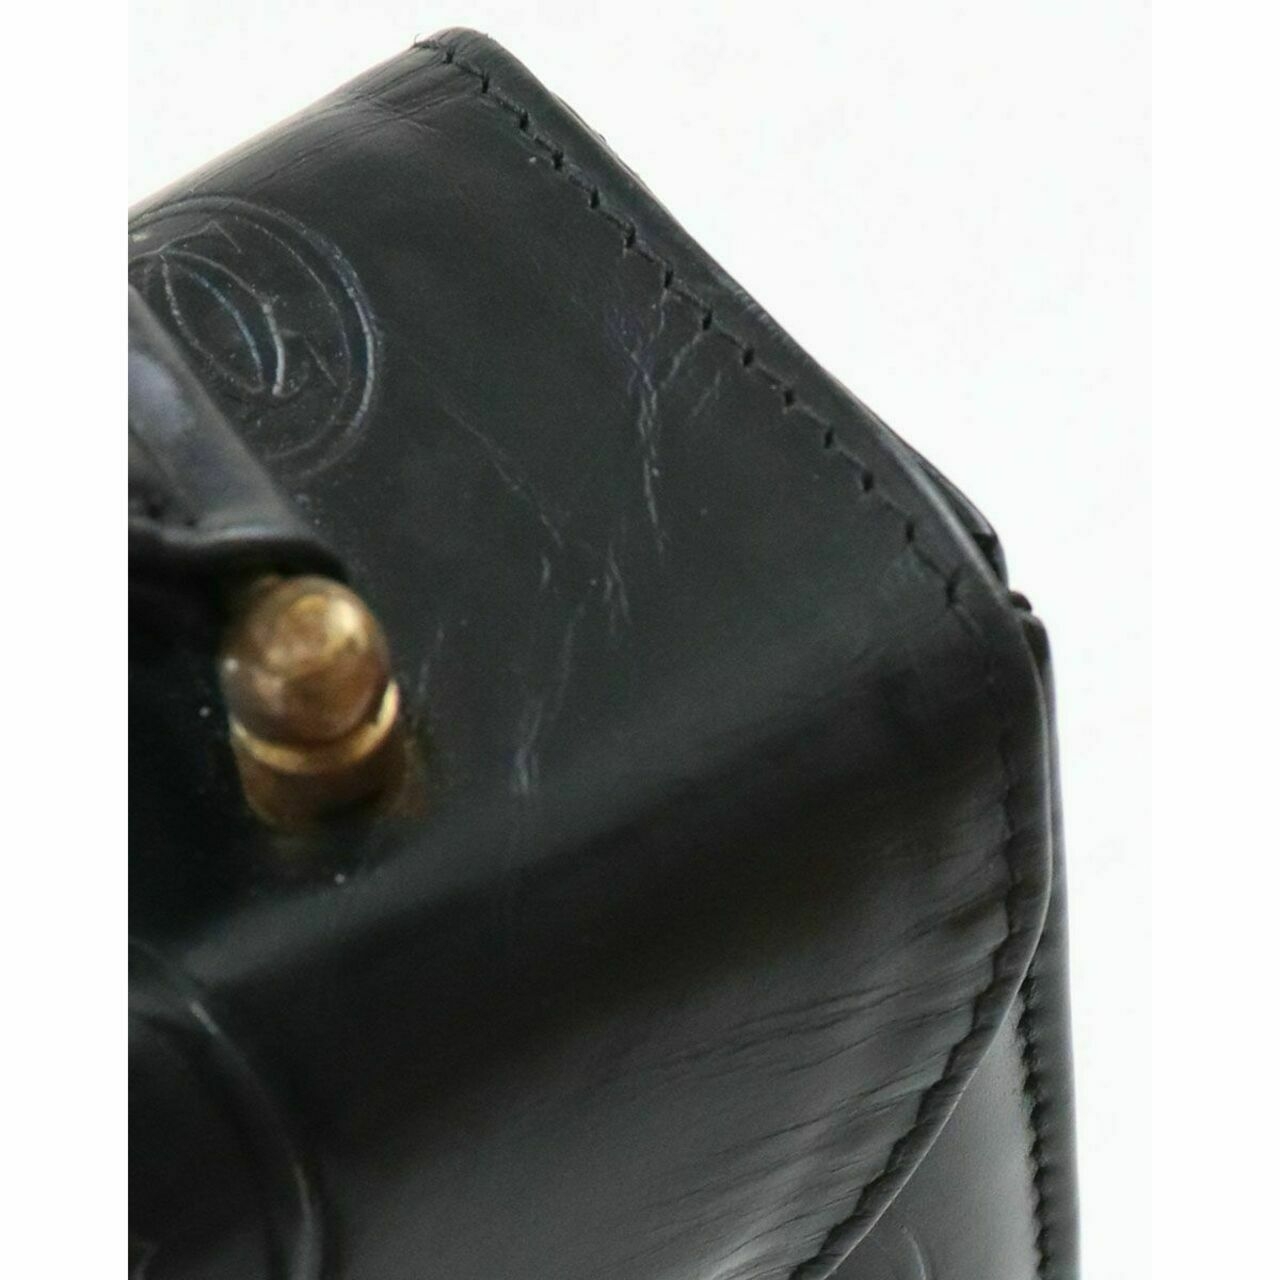 Cartier Black Handbag